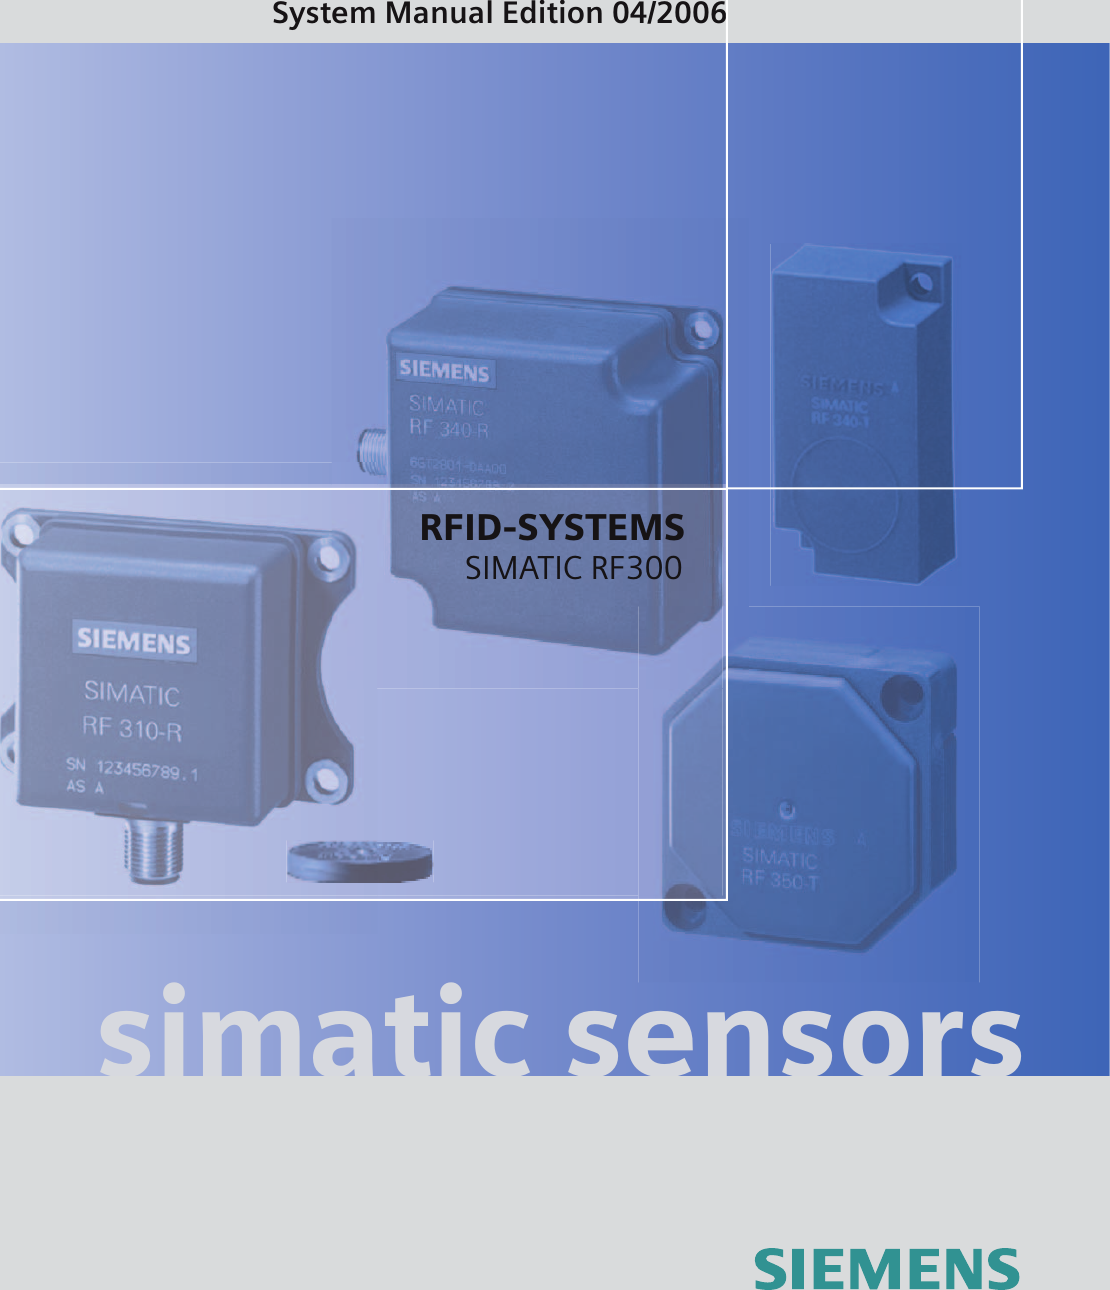 SIMATIC Sensors RFID systems SIMATIC RF300 simatic sensorsSystem Manual Edition 04/2006RFID-SYSTEMSSIMATIC RF300